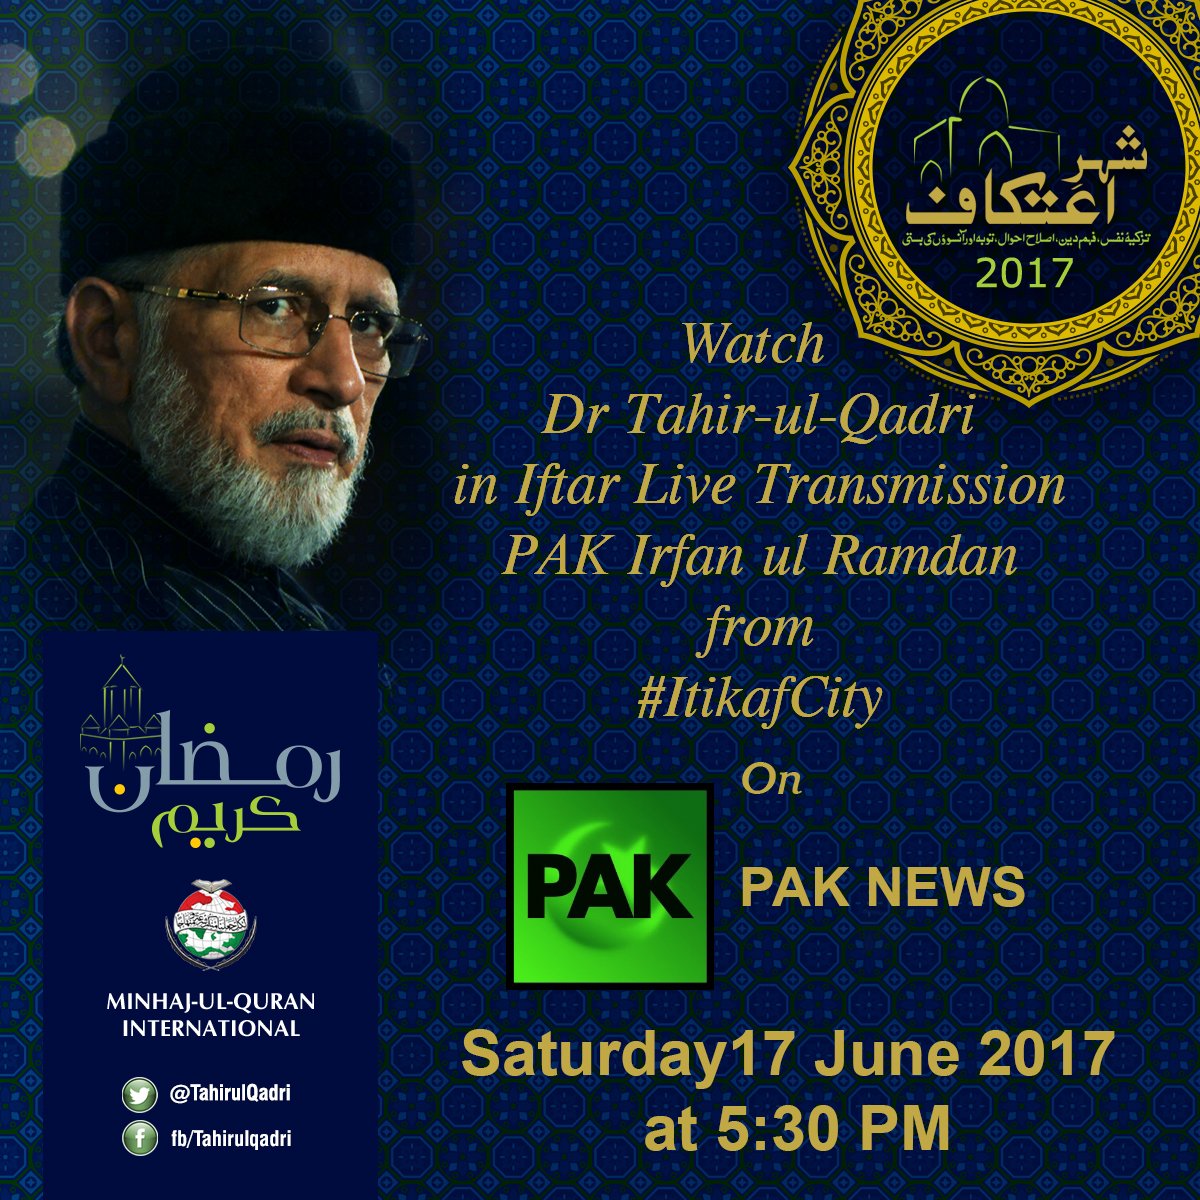 Watch Dr Tahir-ul-Qadri in Iftar Live Transmission 'PAK Irfan-ul-Ramadan' from Itikaf City on PAK NEWS. SAT 17 June at 5:30 PM